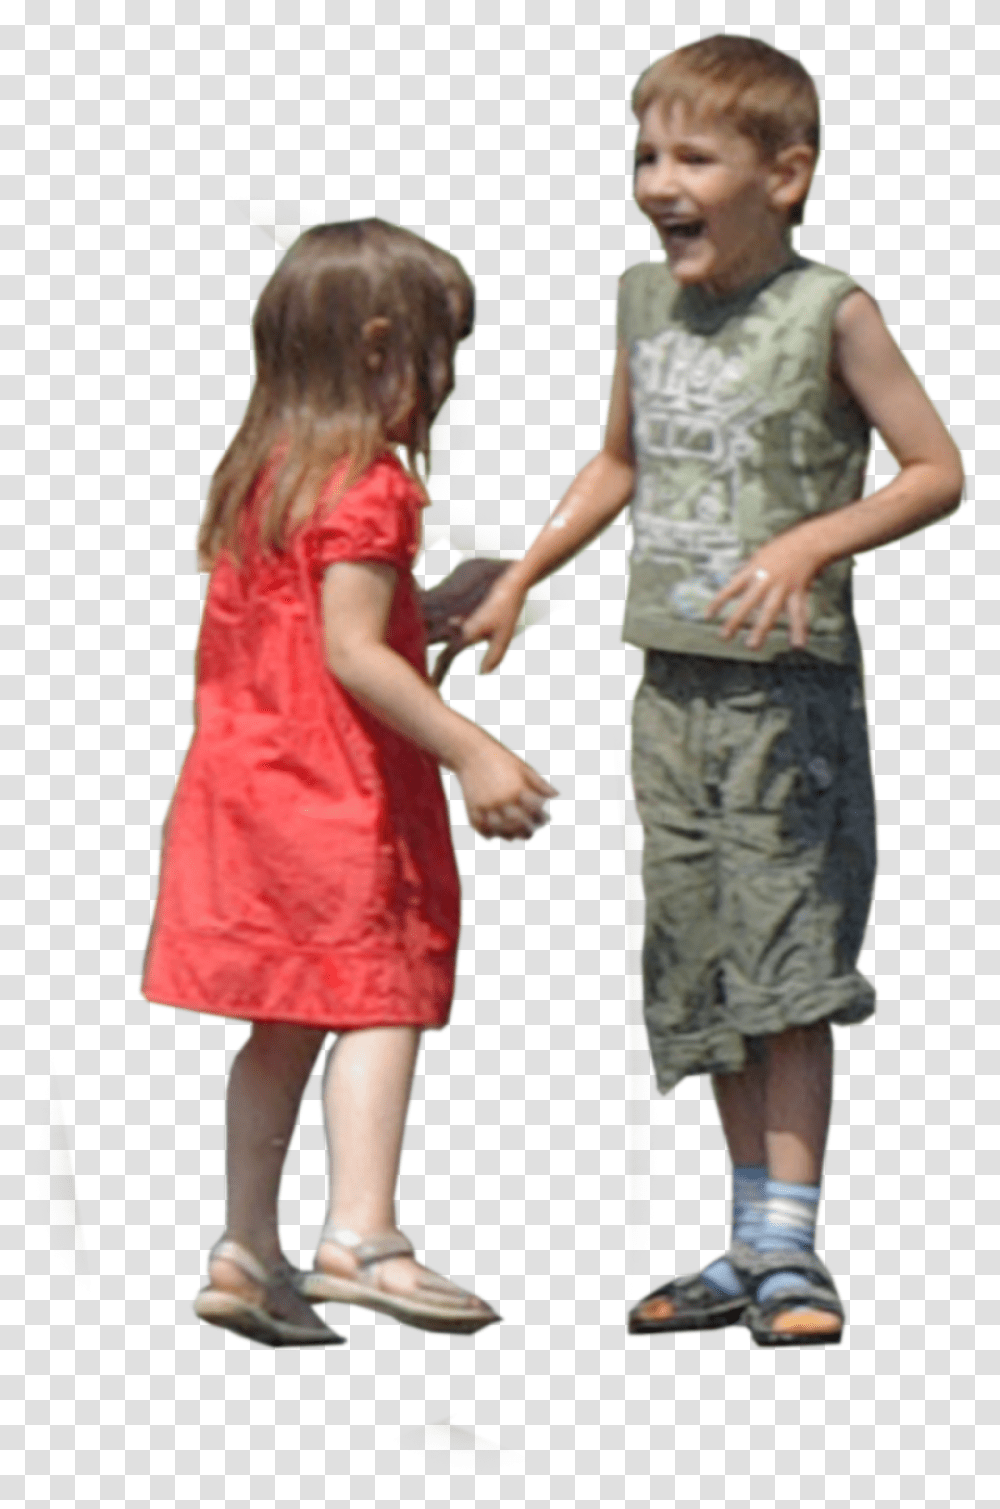 Children Running, Person, Footwear, Dress Transparent Png